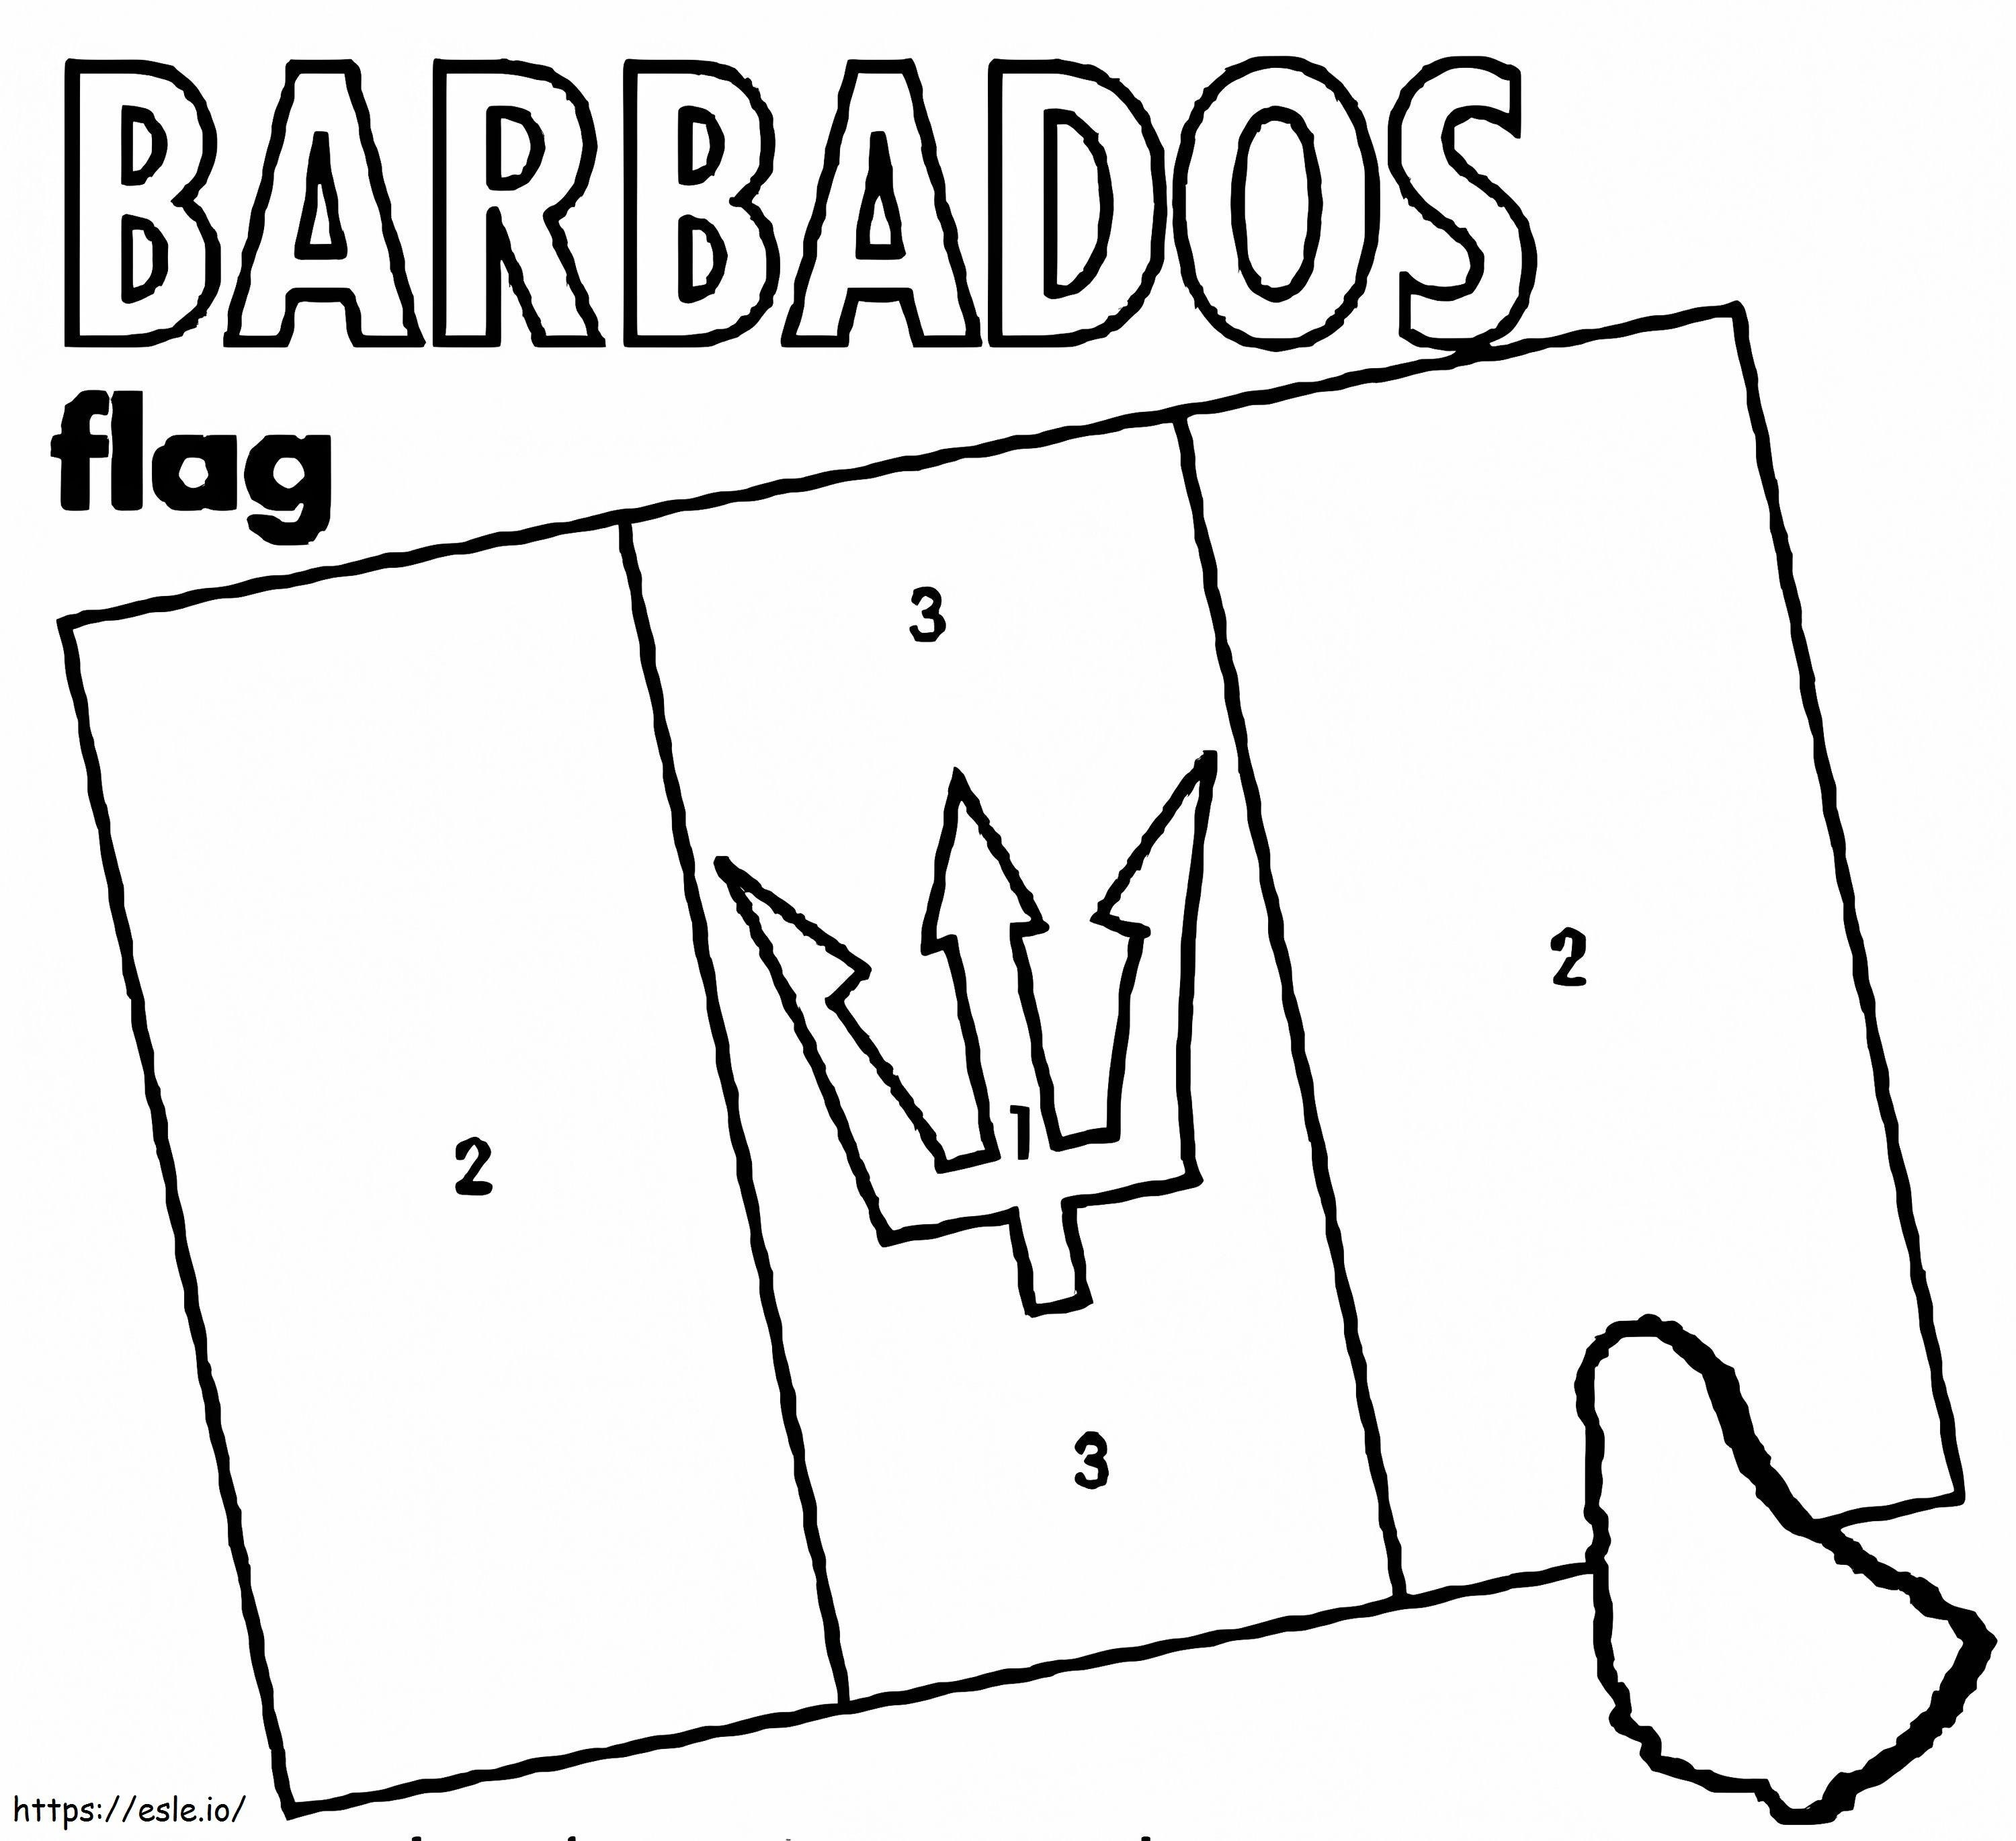 Flagge von Barbados 3 ausmalbilder